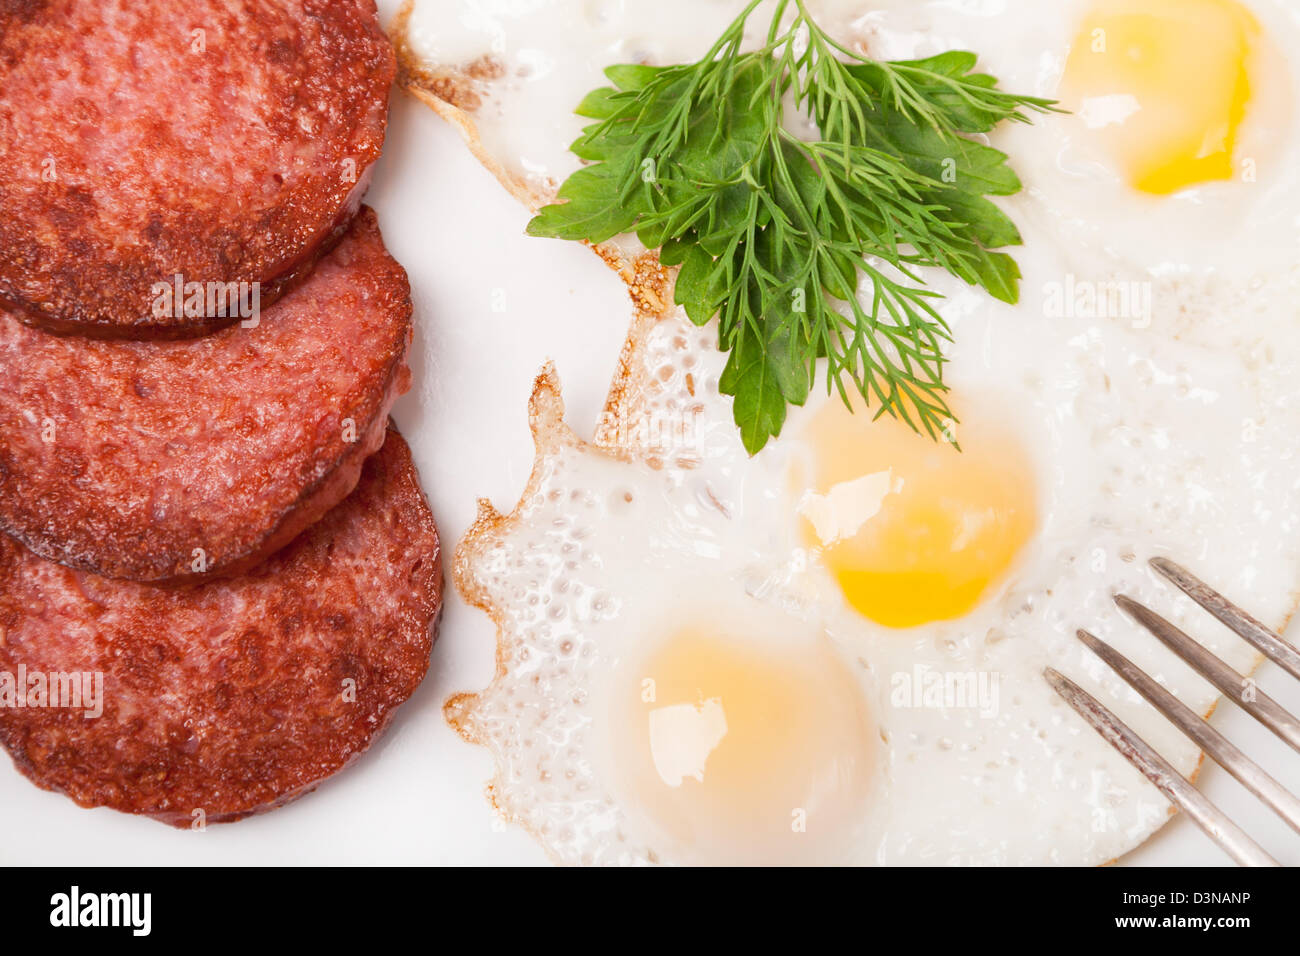 Le petit-déjeuner avec des œufs et des saucisses on white plate Banque D'Images